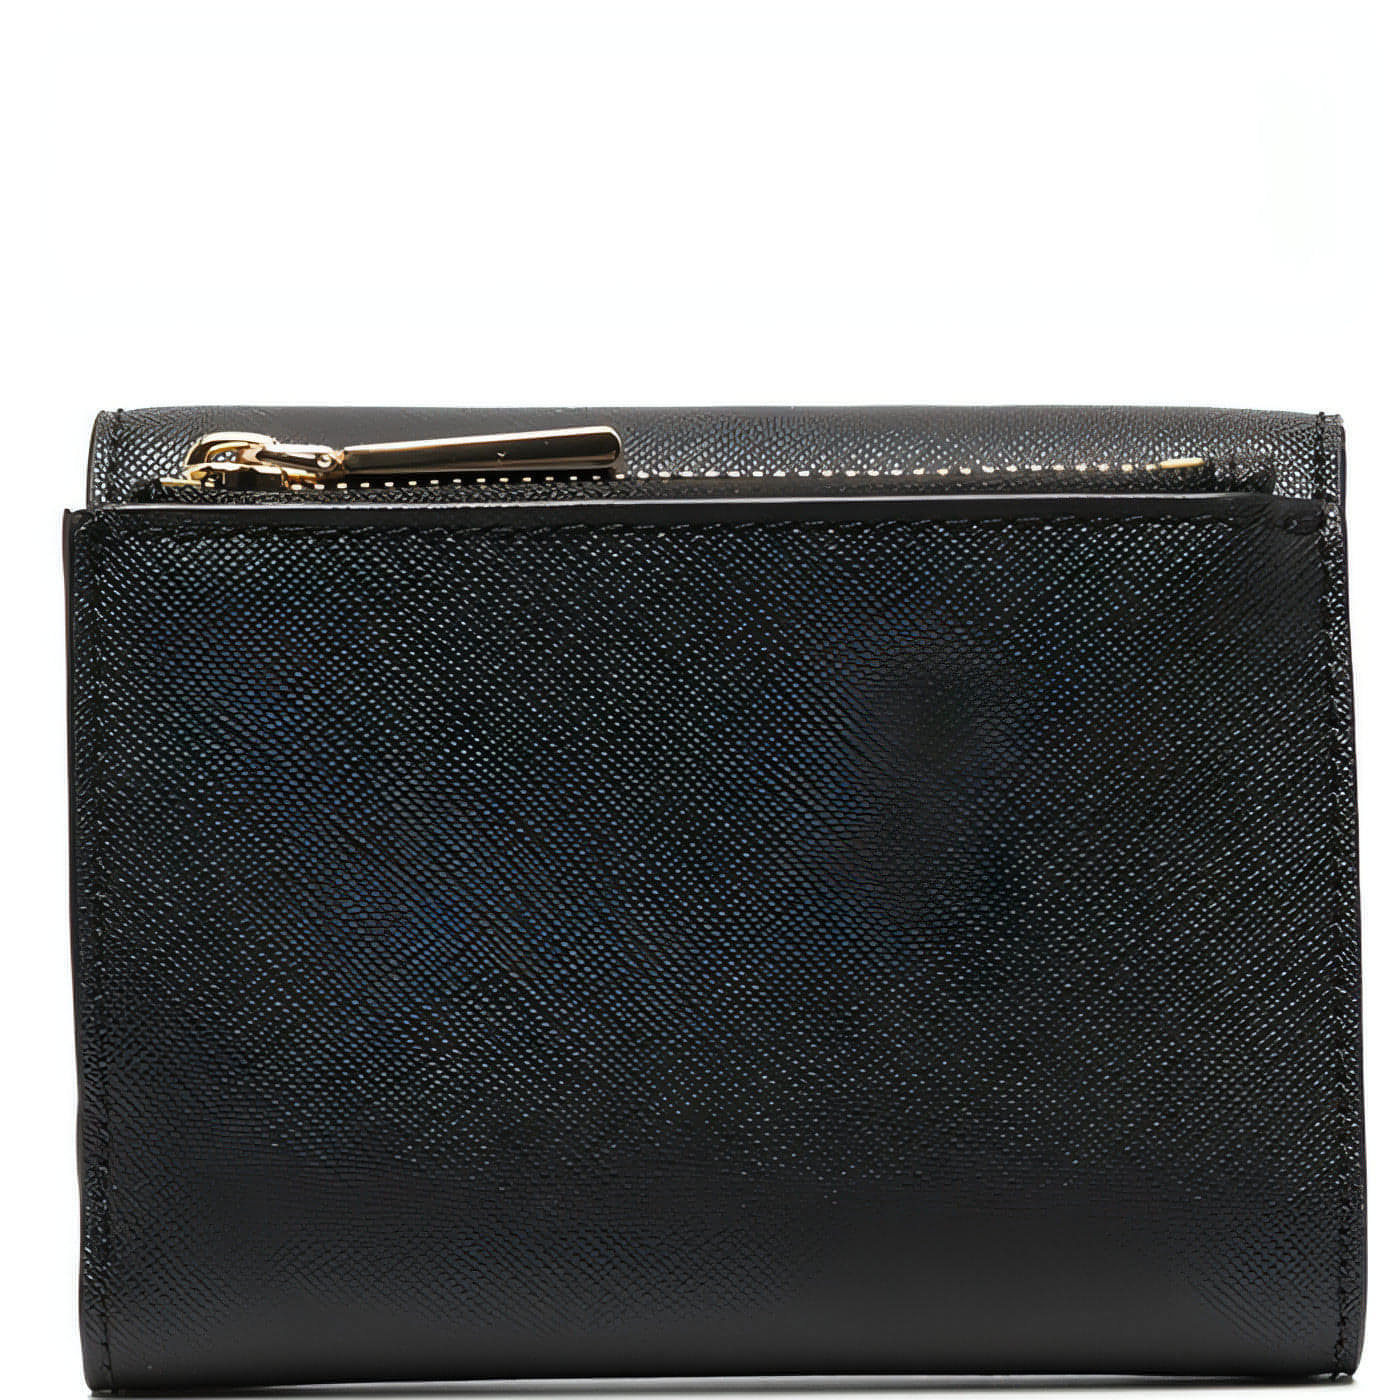 MICHAEL KORS moteriška juoda piniginė Medium trifold wallet